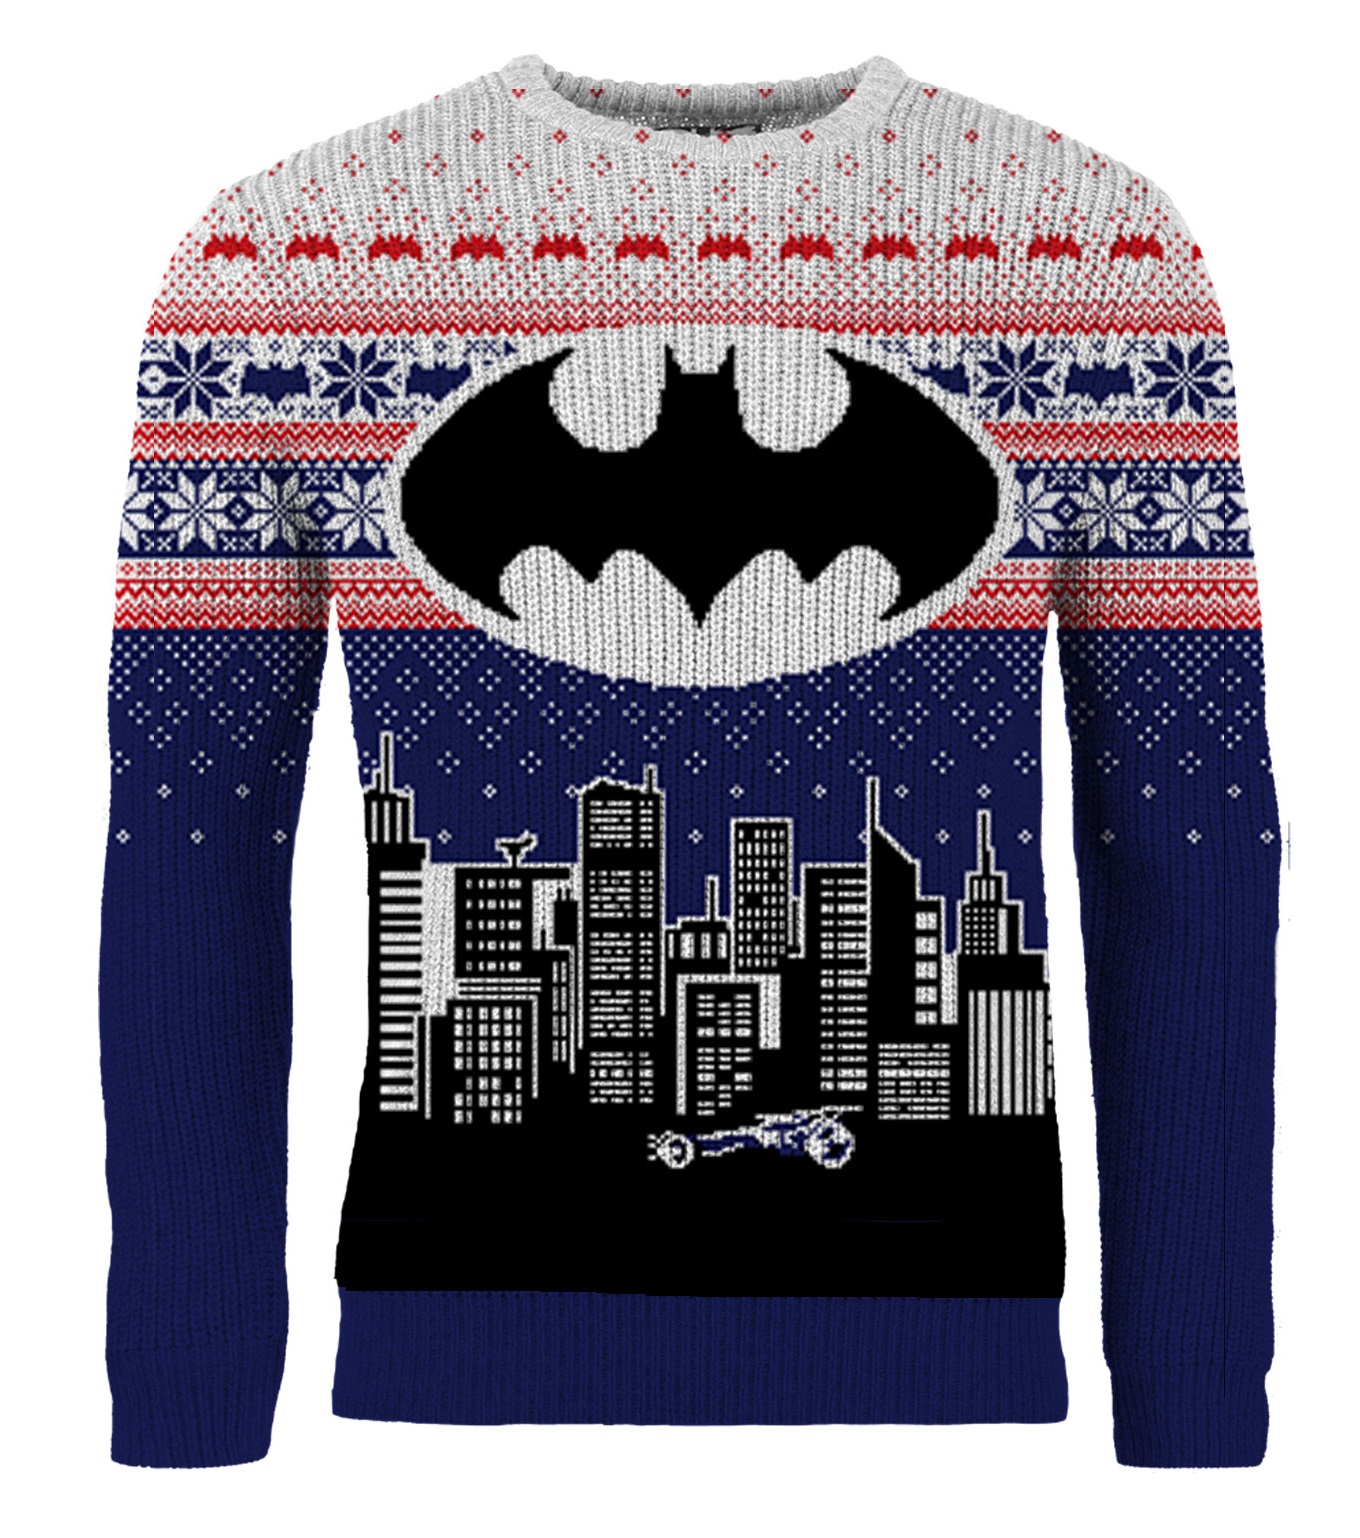 Batman Bat Signal Unisex Knitted Christmas Jumper Sweater - Batman Christmas Sweater , HD Wallpaper & Backgrounds